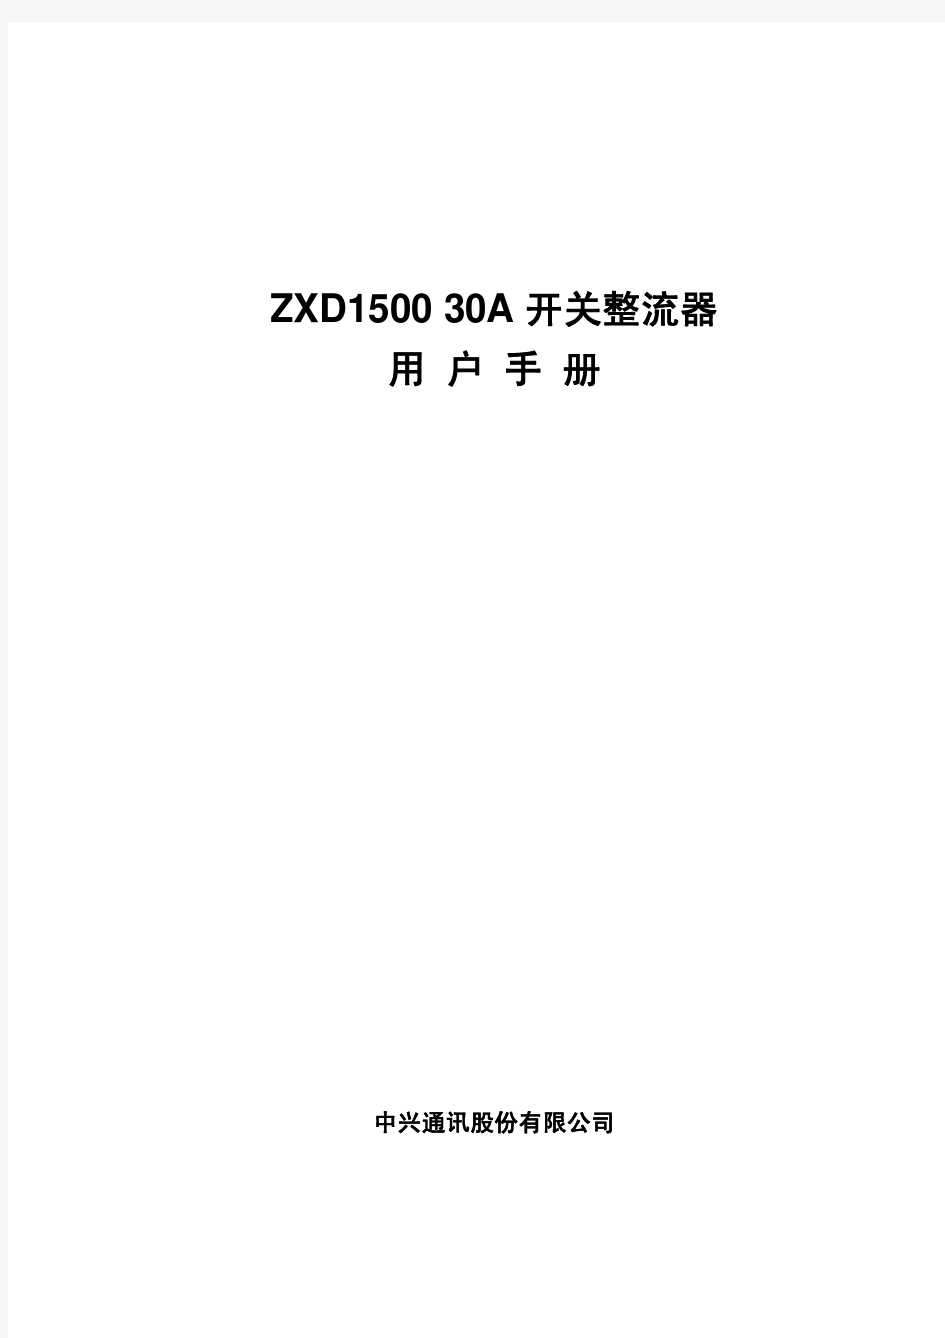 ZXD1500_30A开关整流器用户手册